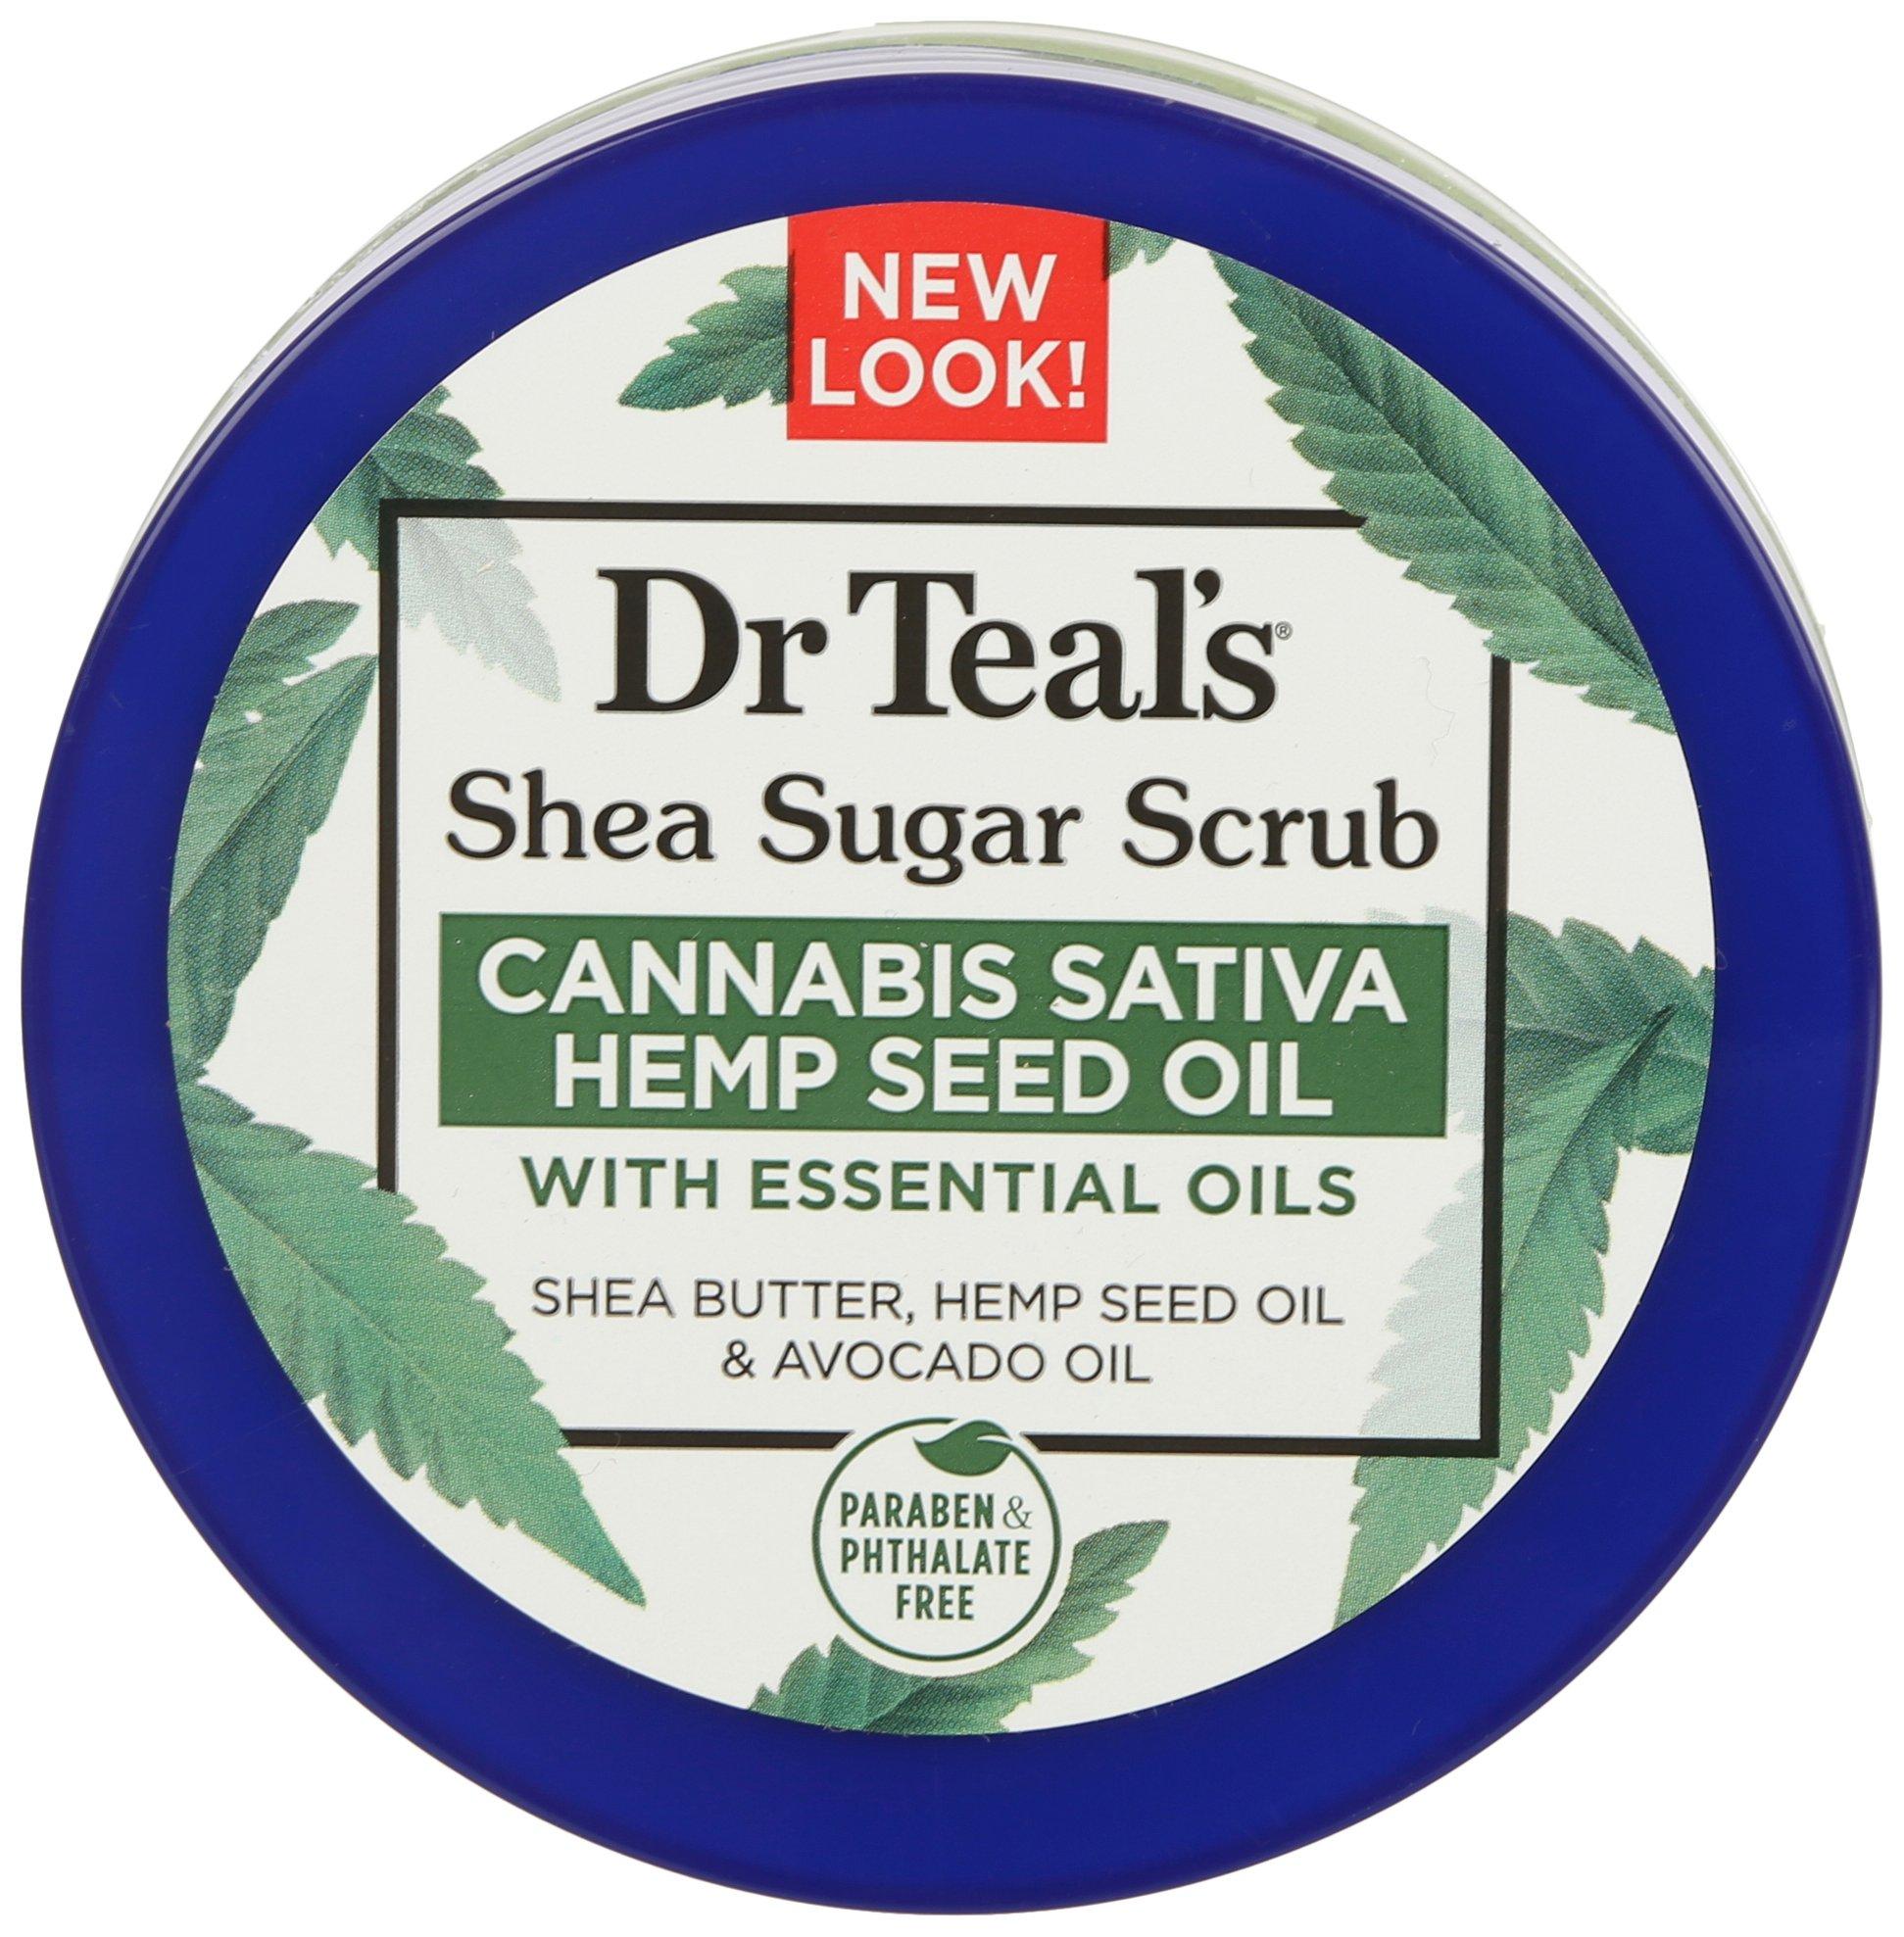 Dr Teals 19 Oz. Cannabis Hemp Seed Oil Shea Sugar Scrub